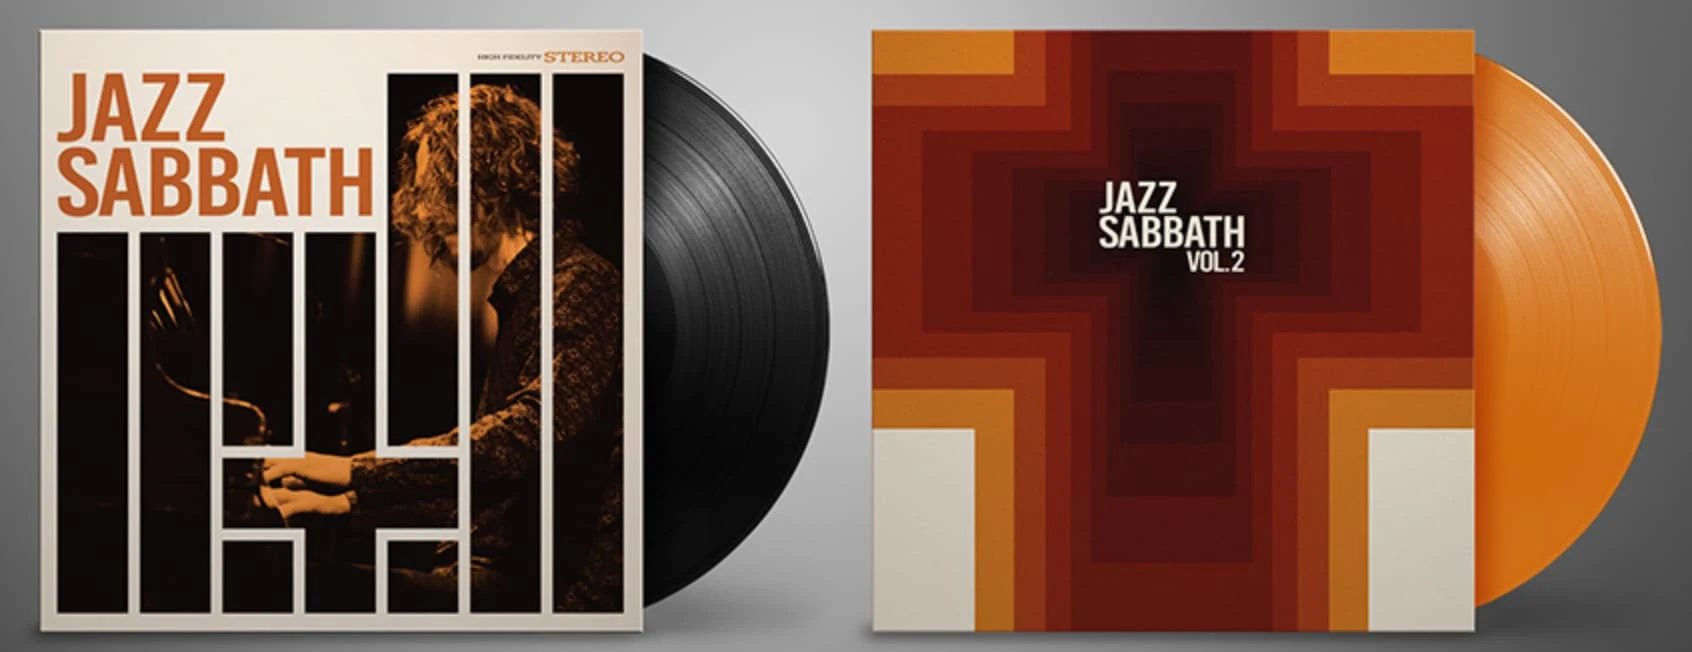 Jazz Sabbath | Die großartige fiktive Geschichte vor Black Sabbath als Jazz Alben